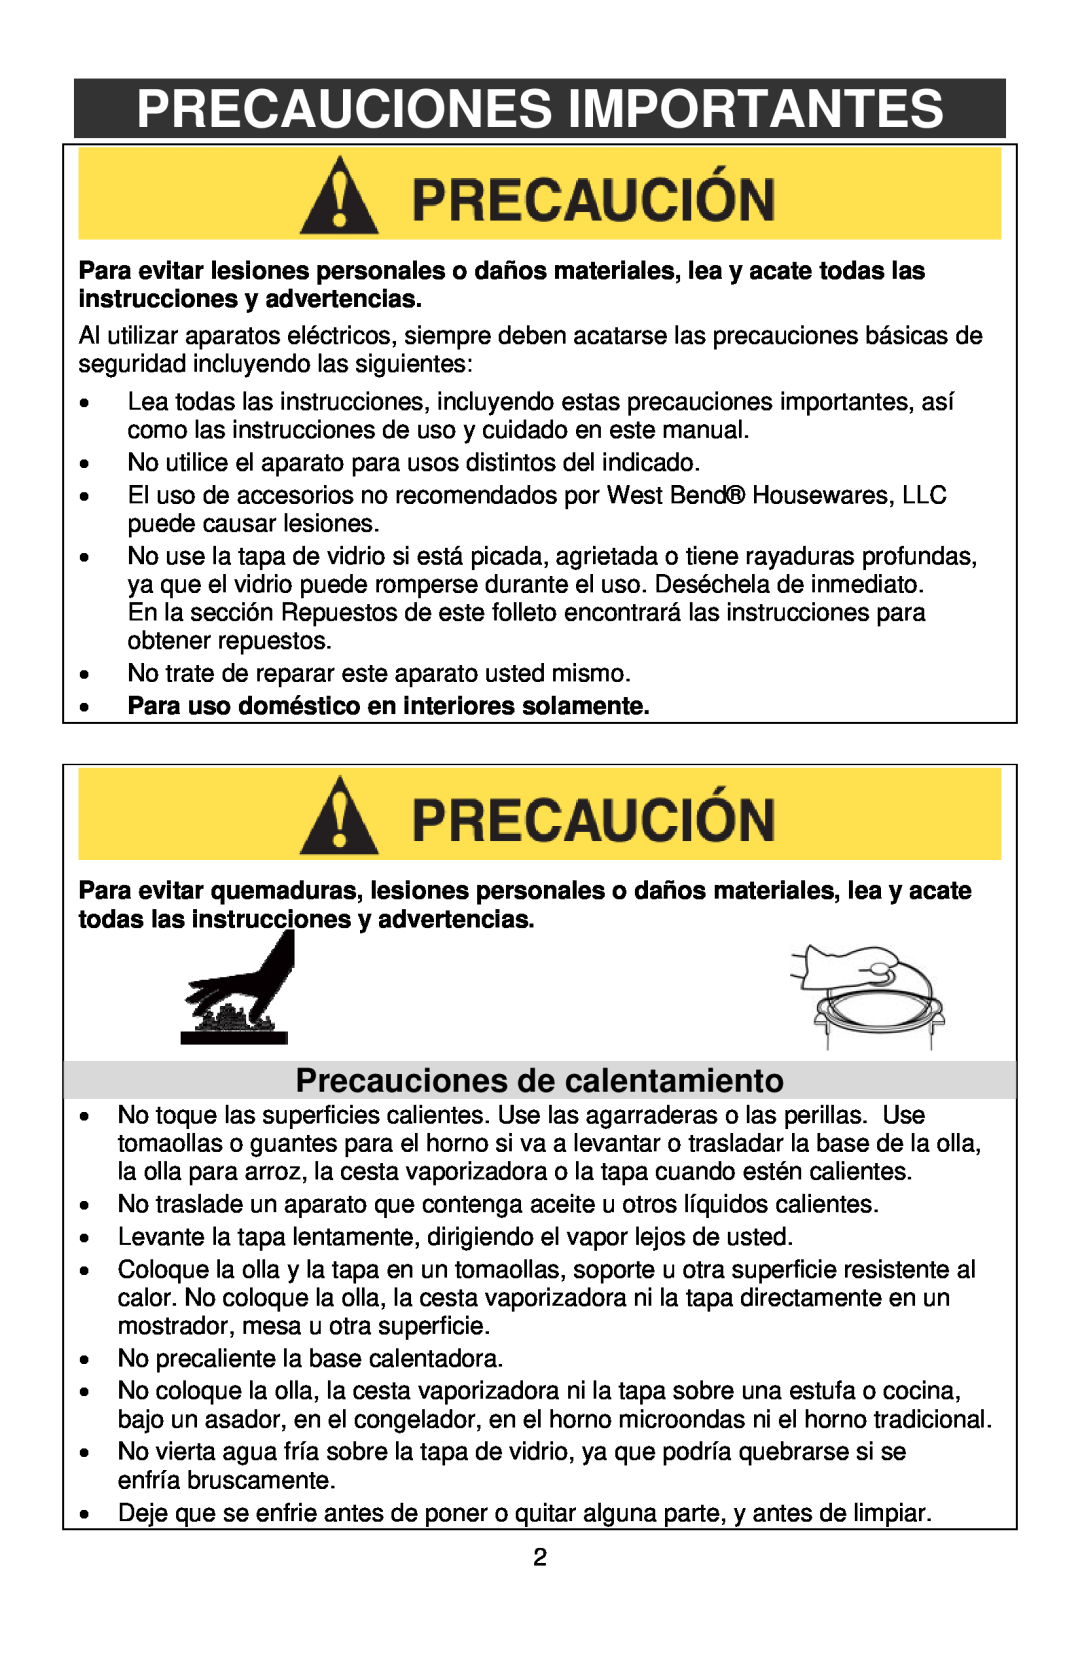 West Bend 12-Cup Automatic Rice Cooker instruction manual Precauciones Importantes, Precauciones de calentamiento 